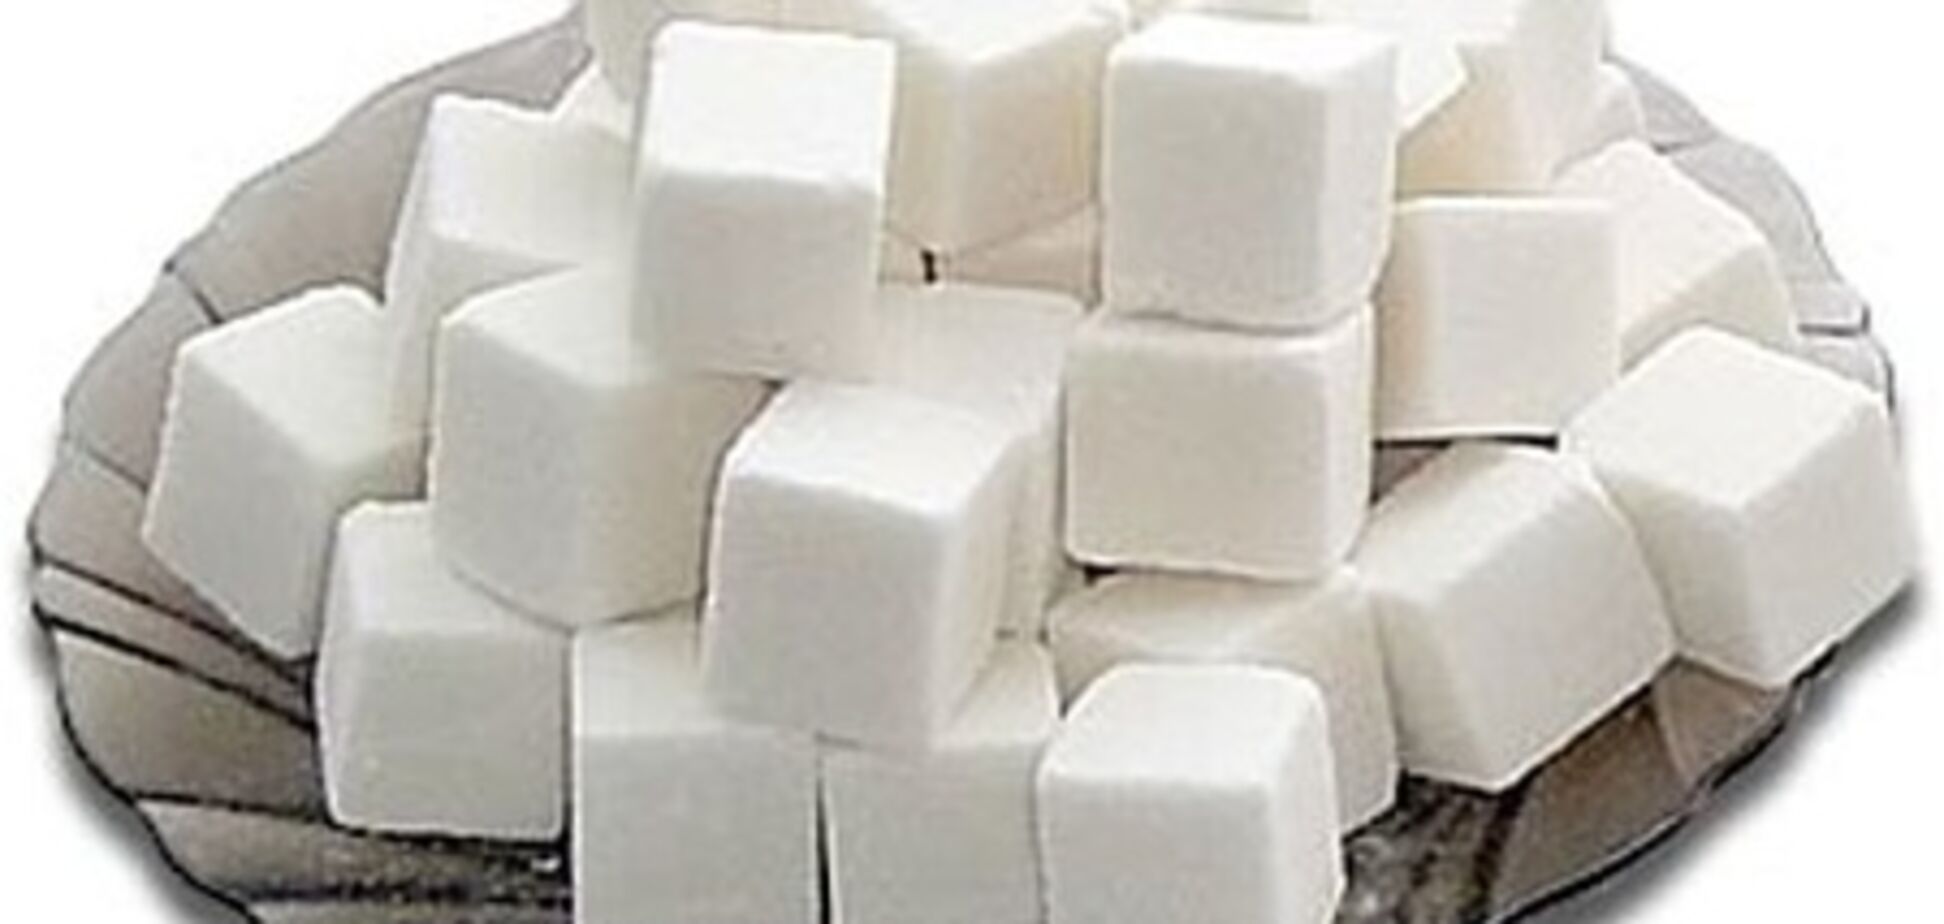 Цены на сахар увеличатся